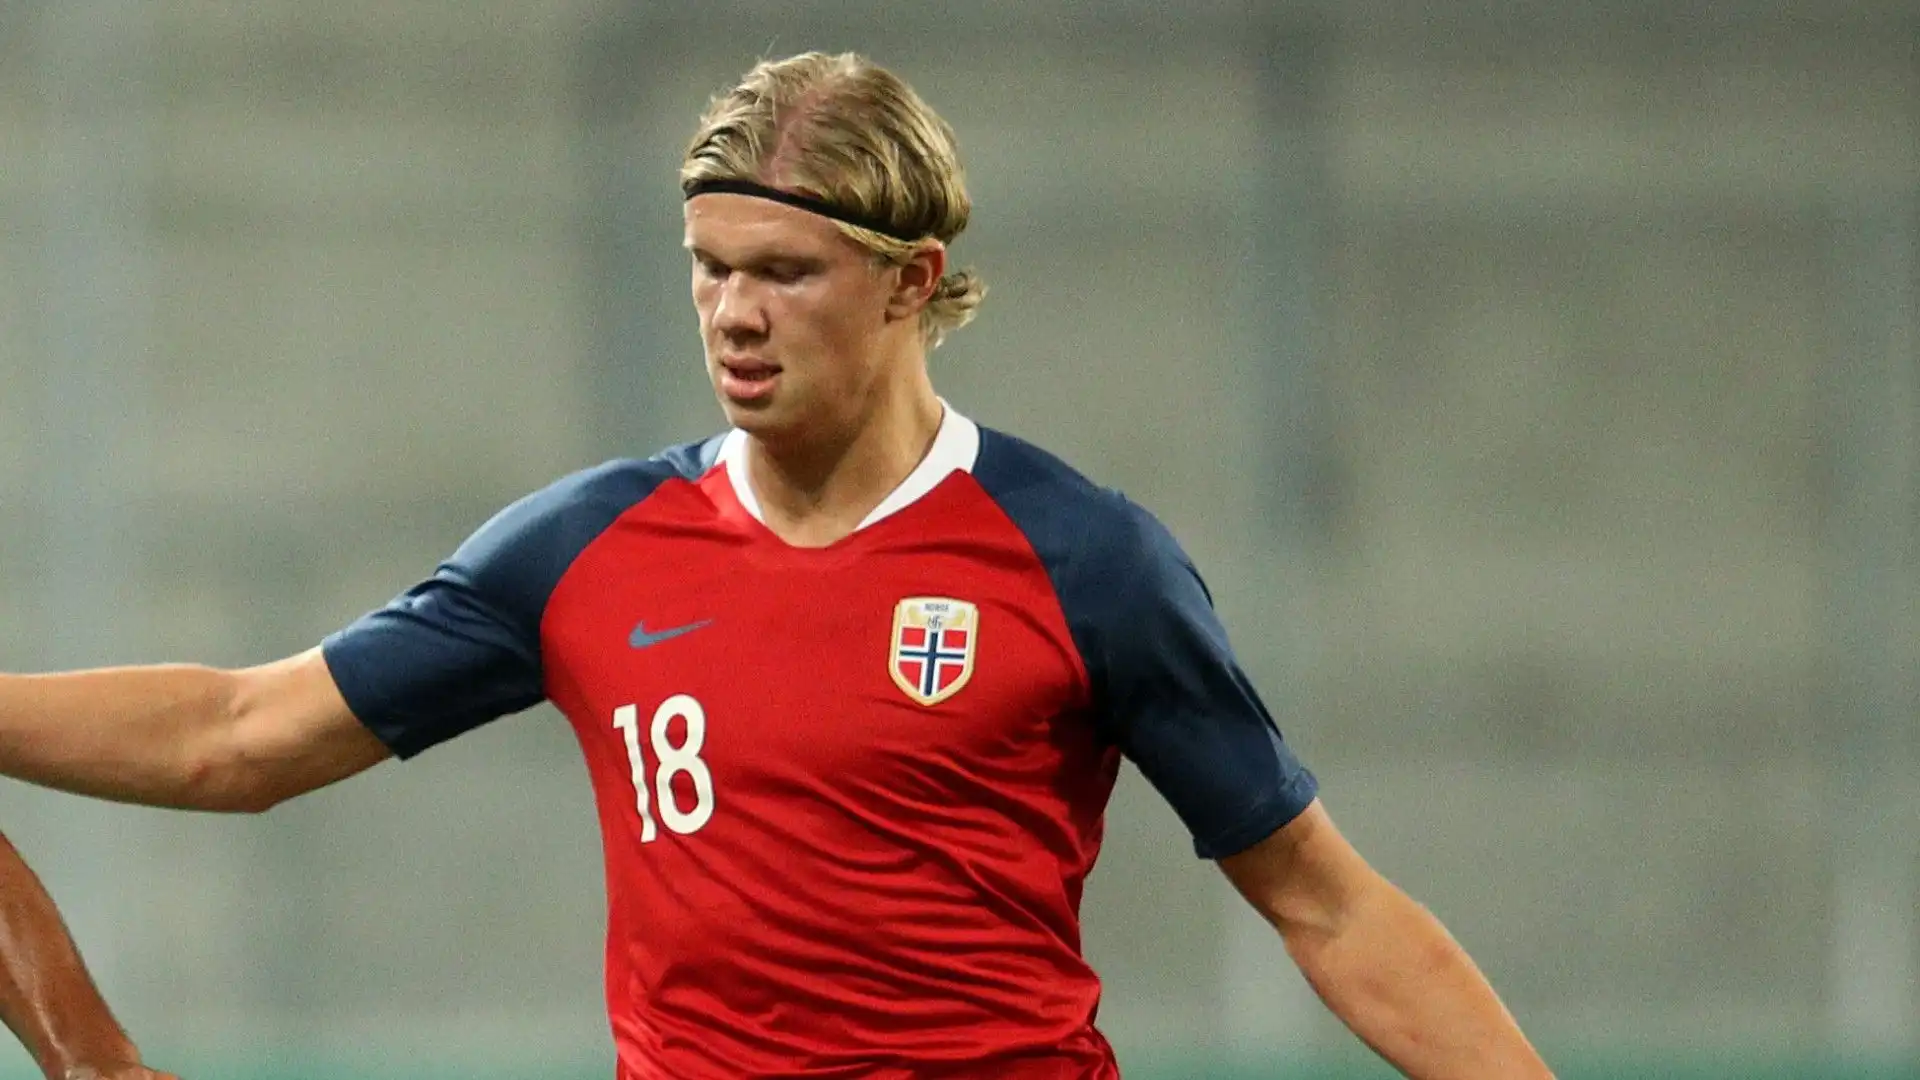 Nel 2019 ha messo a segno ben 9 gol in una sola partita: Norvegia-Honduras valida per i Mondiali Under 20